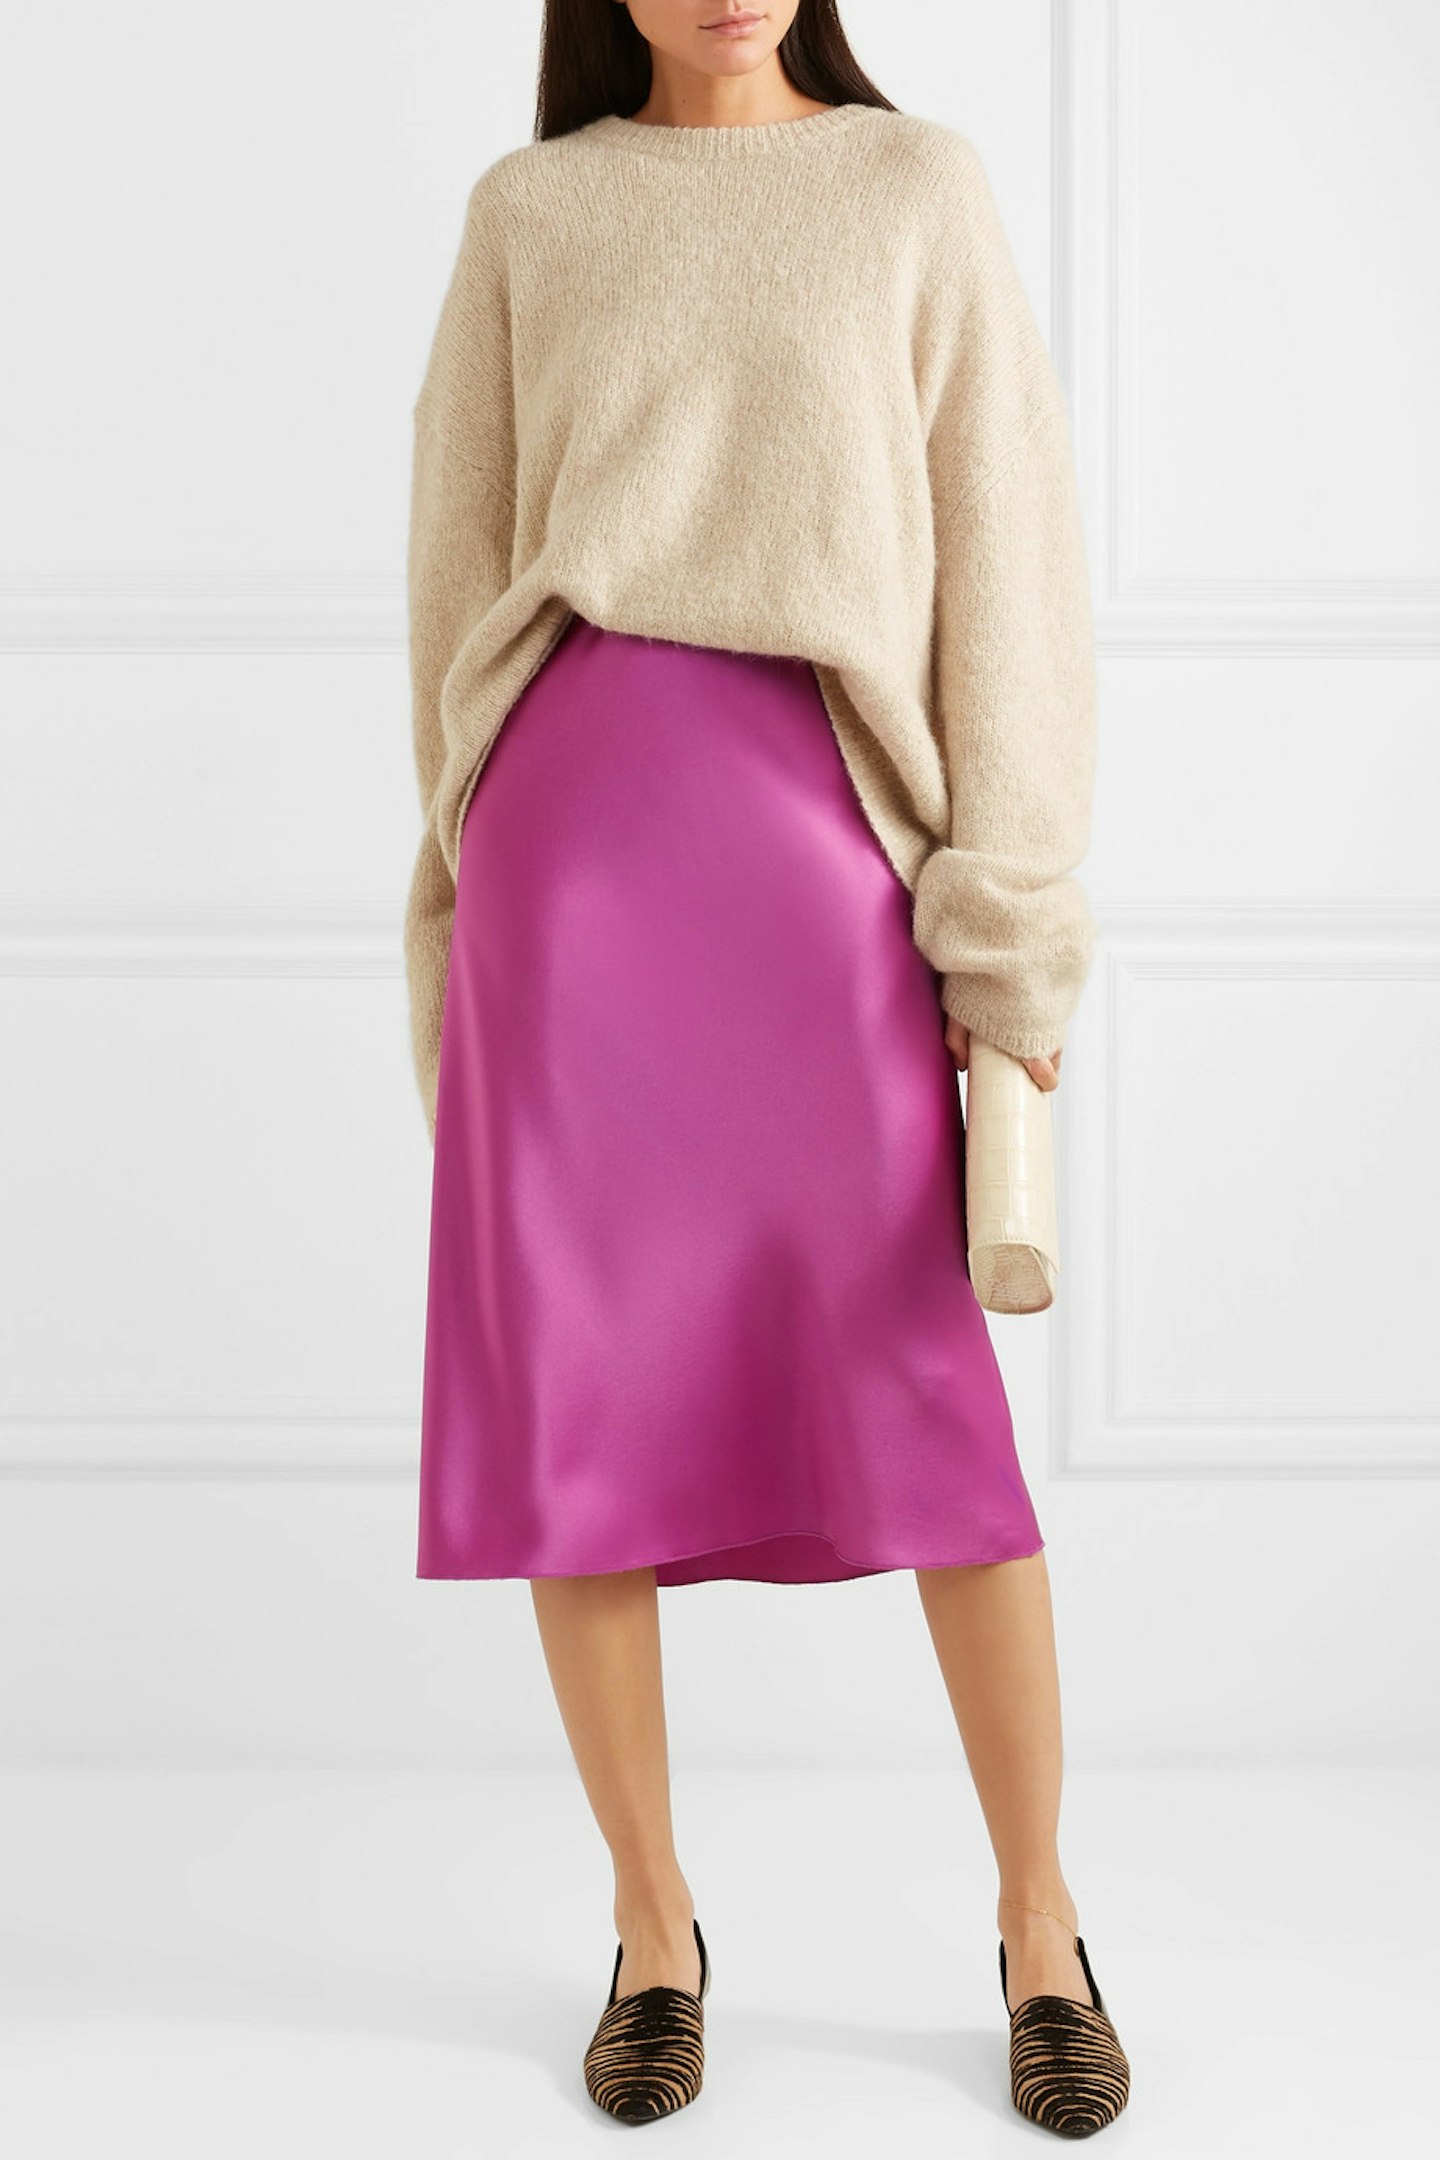 Nanushka, Satin Midi Skirt, £330